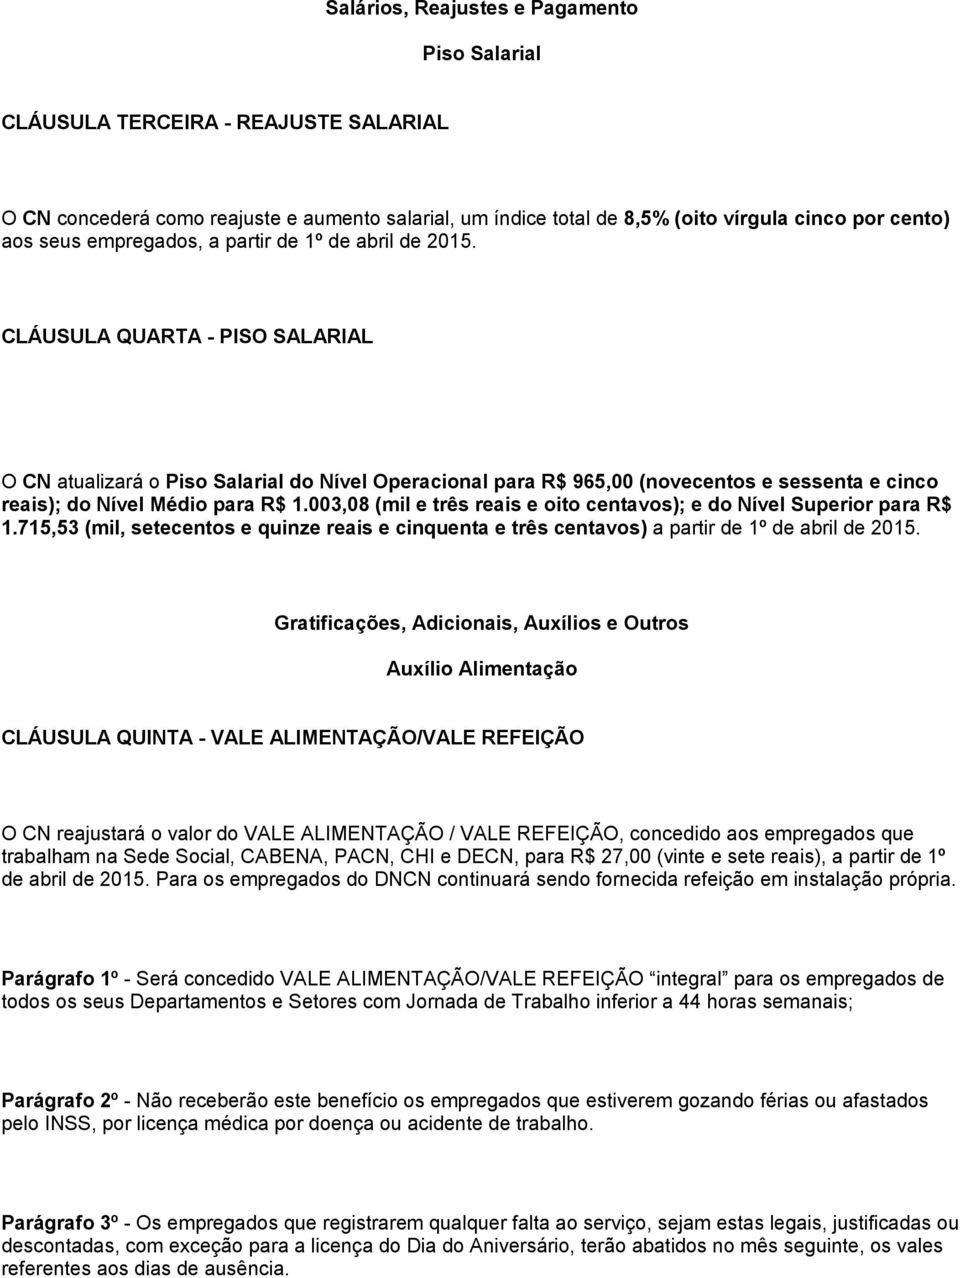 CLÁUSULA QUARTA - PISO SALARIAL O CN atualizará o Piso Salarial do Nível Operacional para R$ 965,00 (novecentos e sessenta e cinco reais); do Nível Médio para R$ 1.